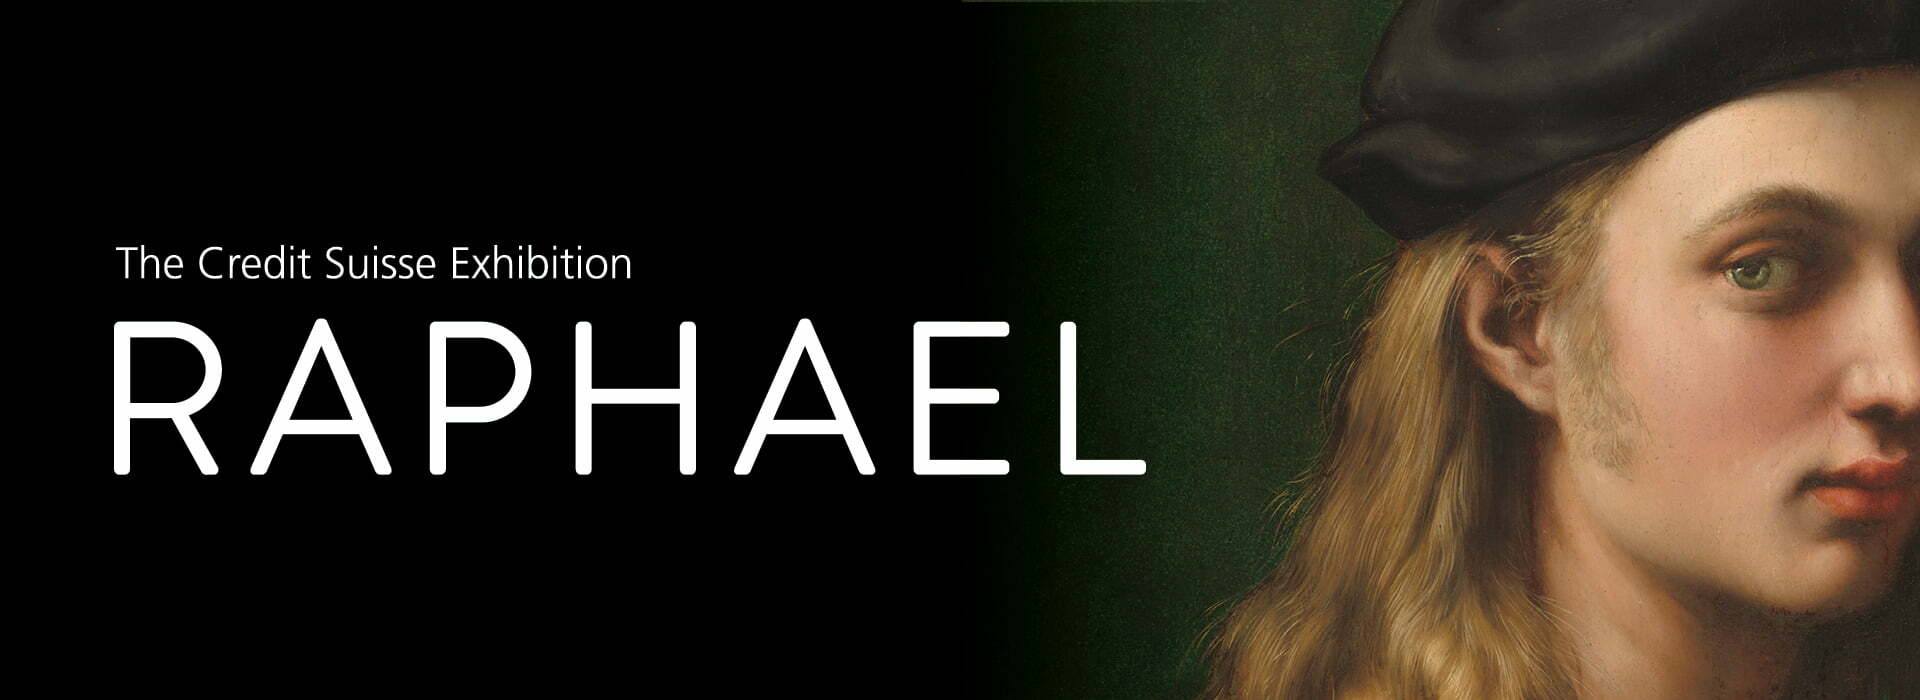 Opera lui Rafael – prezentată în expoziţie la The National Gallery din Londra